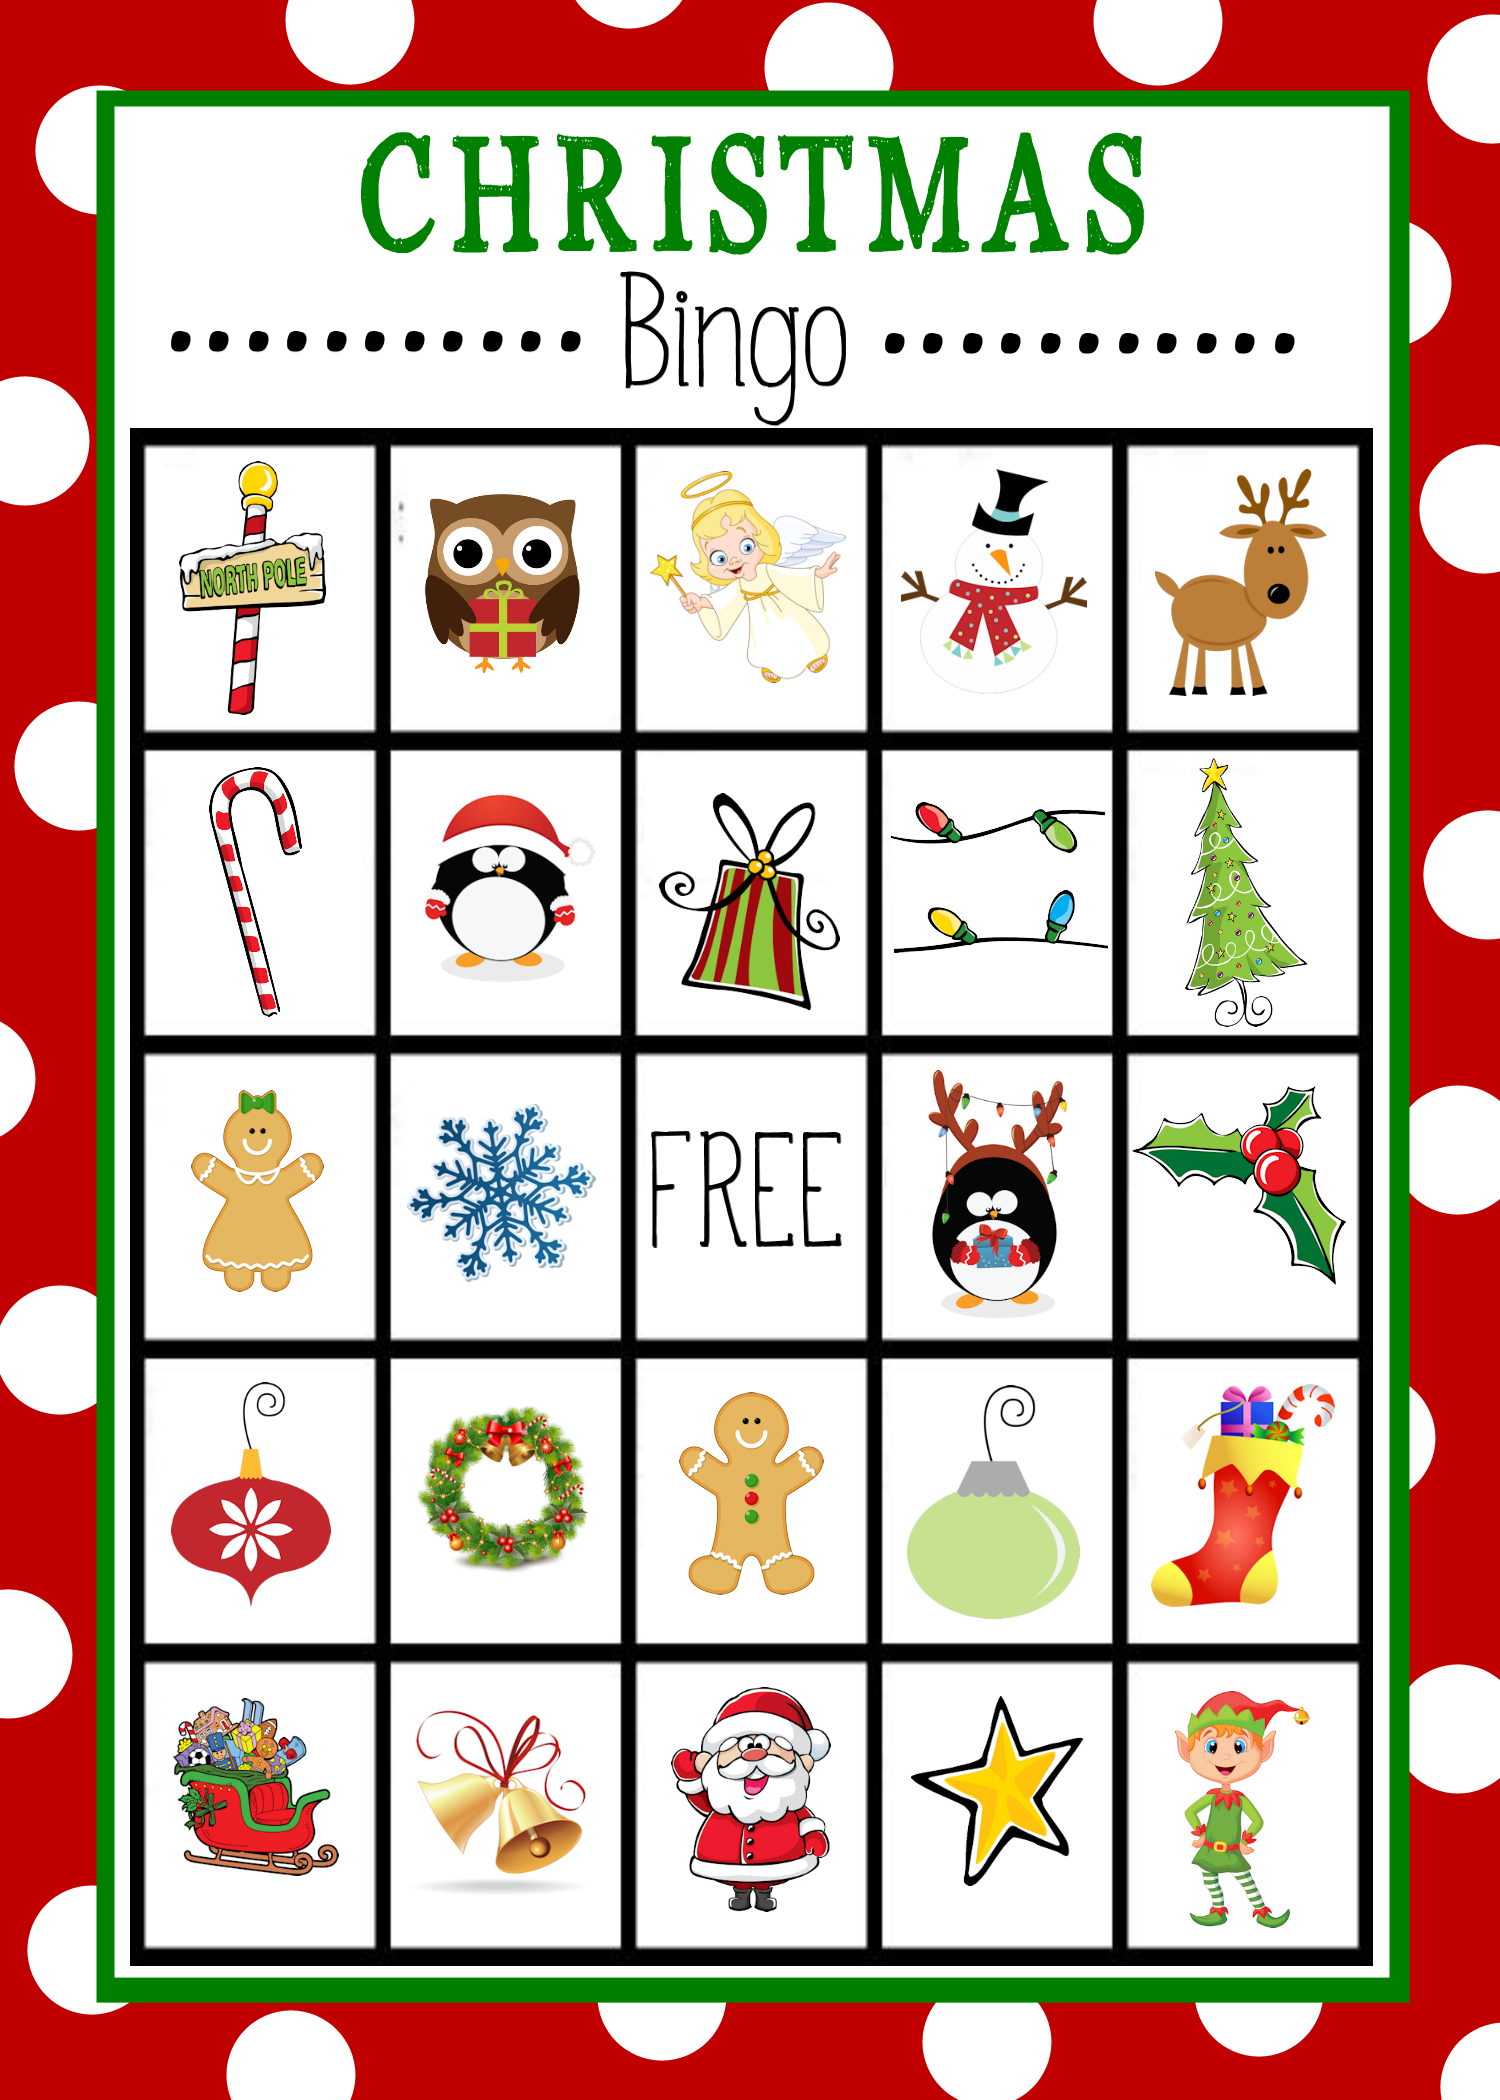 Free Printable Christmas Bingo Game | Christmas | Christmas Bingo - Christmas Bingo Game Printable Free